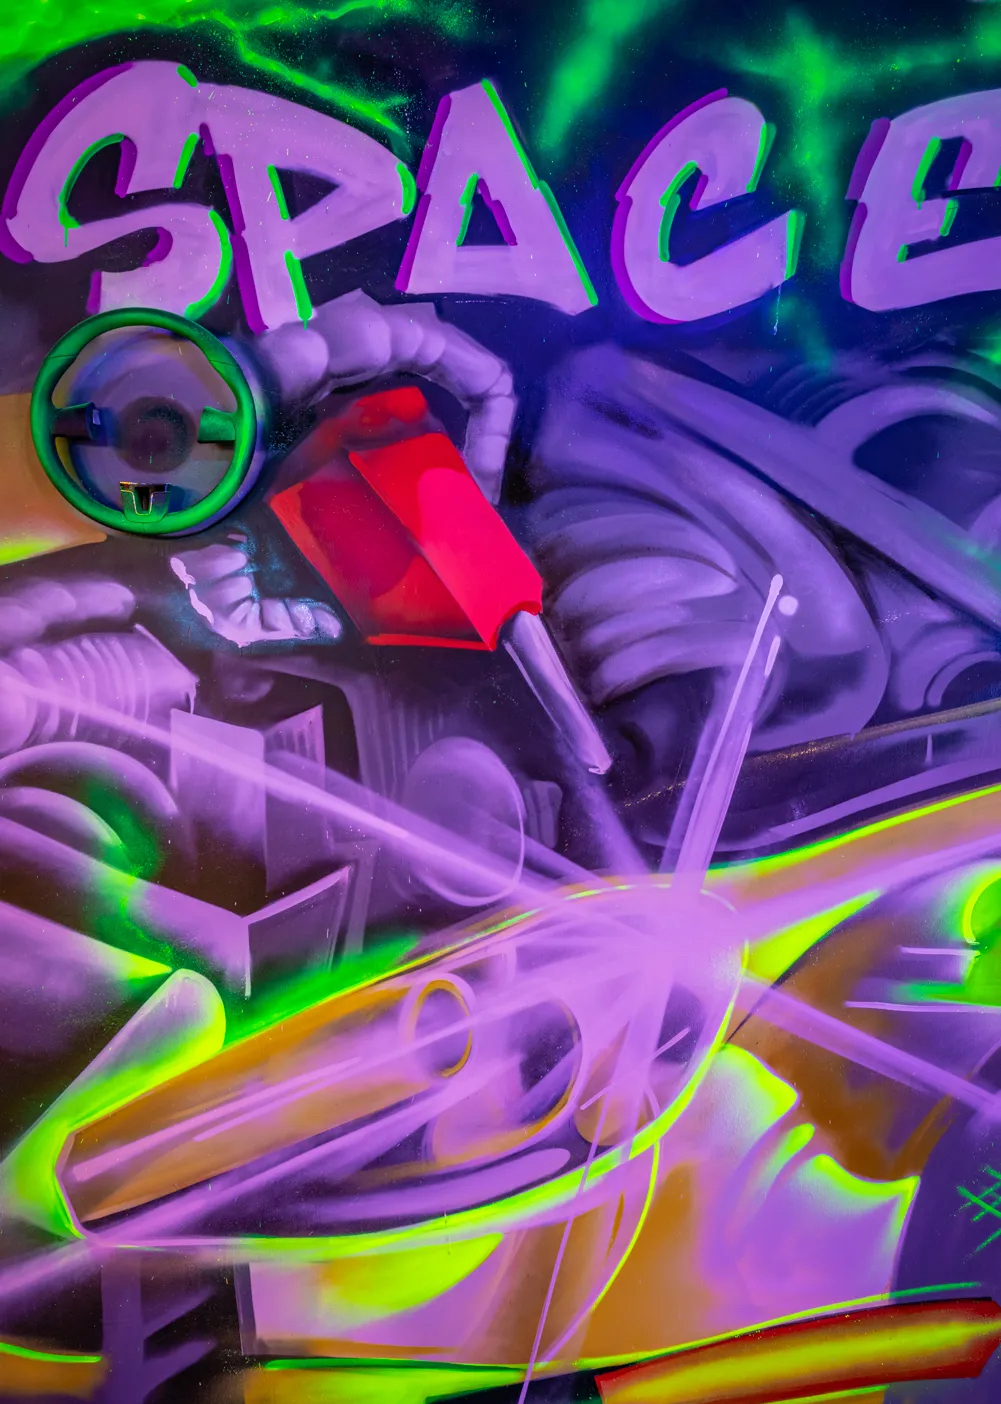 途虎养车Auto Space X艺术展览活动策划重塑汽车的另一种美 美陈网站 美陈前沿 